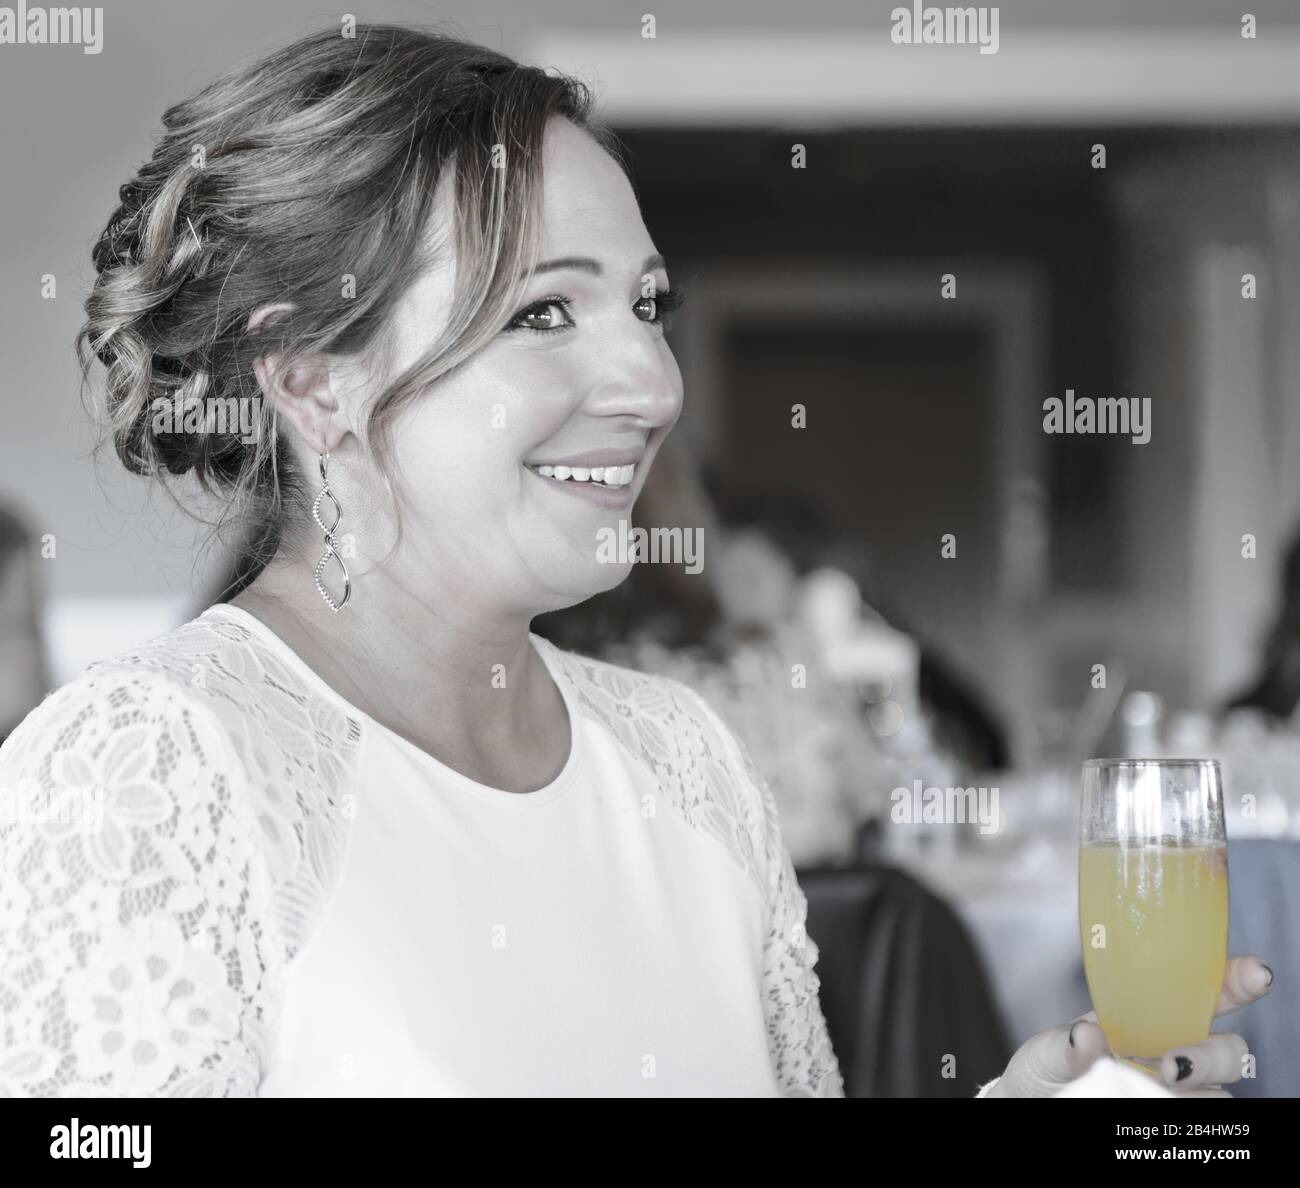 Primer plano de una joven sonriente y bonita vestida con un vestido blanco con una mimosa en un evento Foto de stock